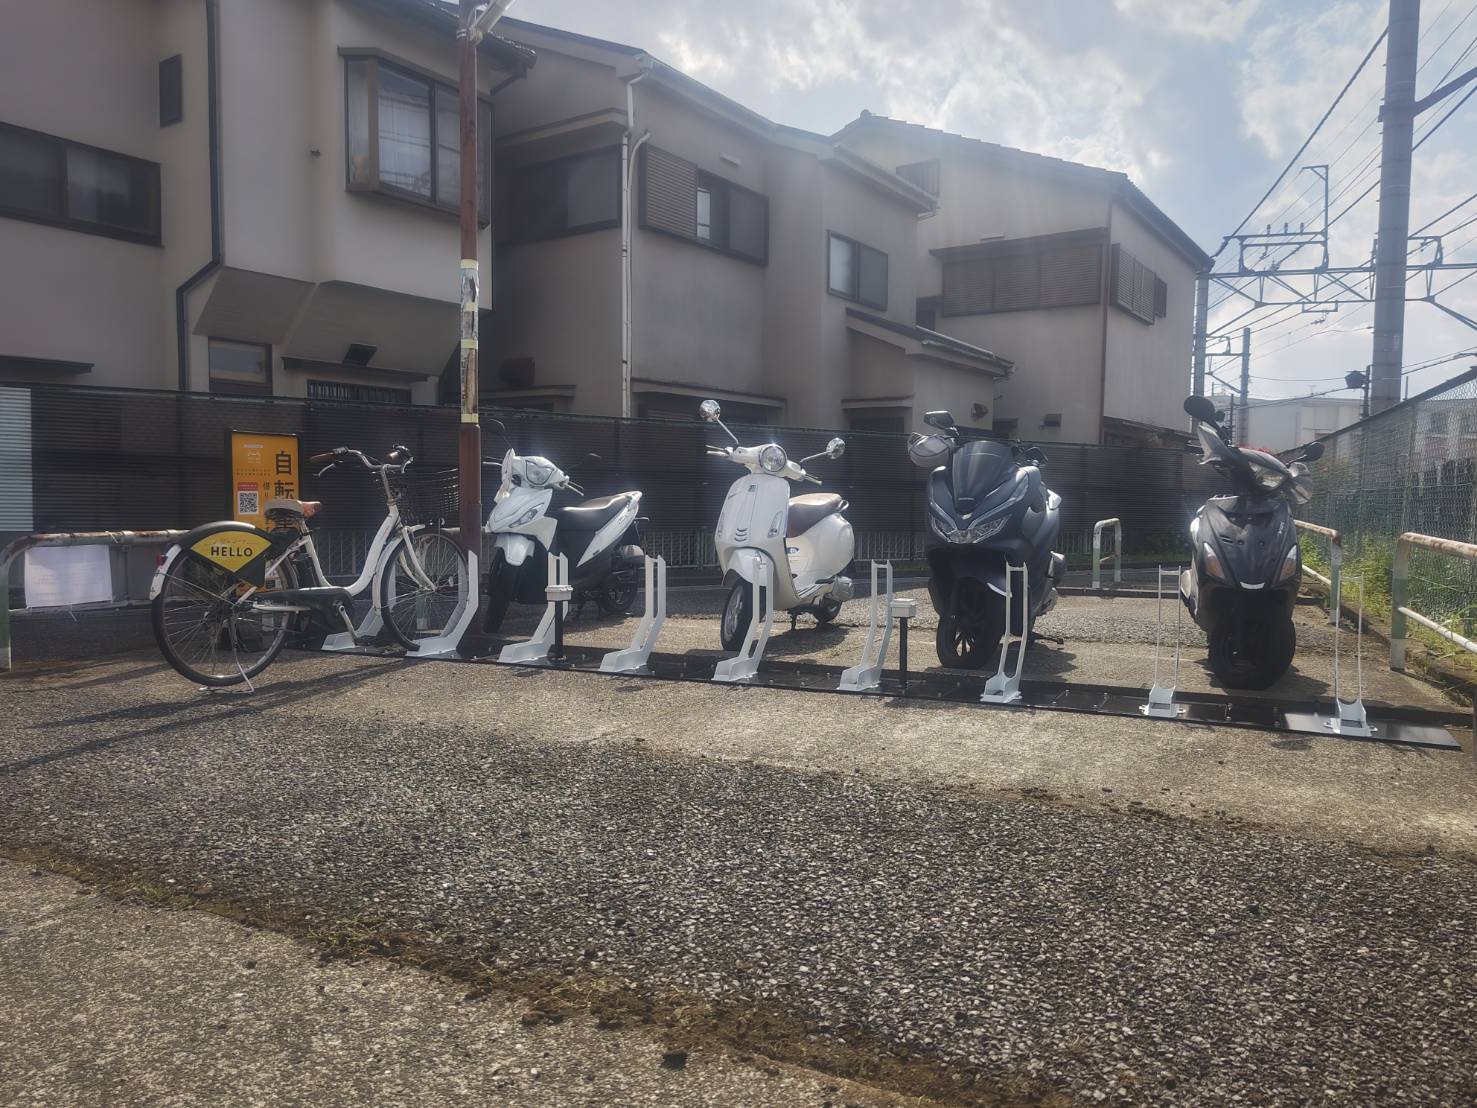 西所沢第2自転車駐車場 (HELLO CYCLING ポート)の画像1